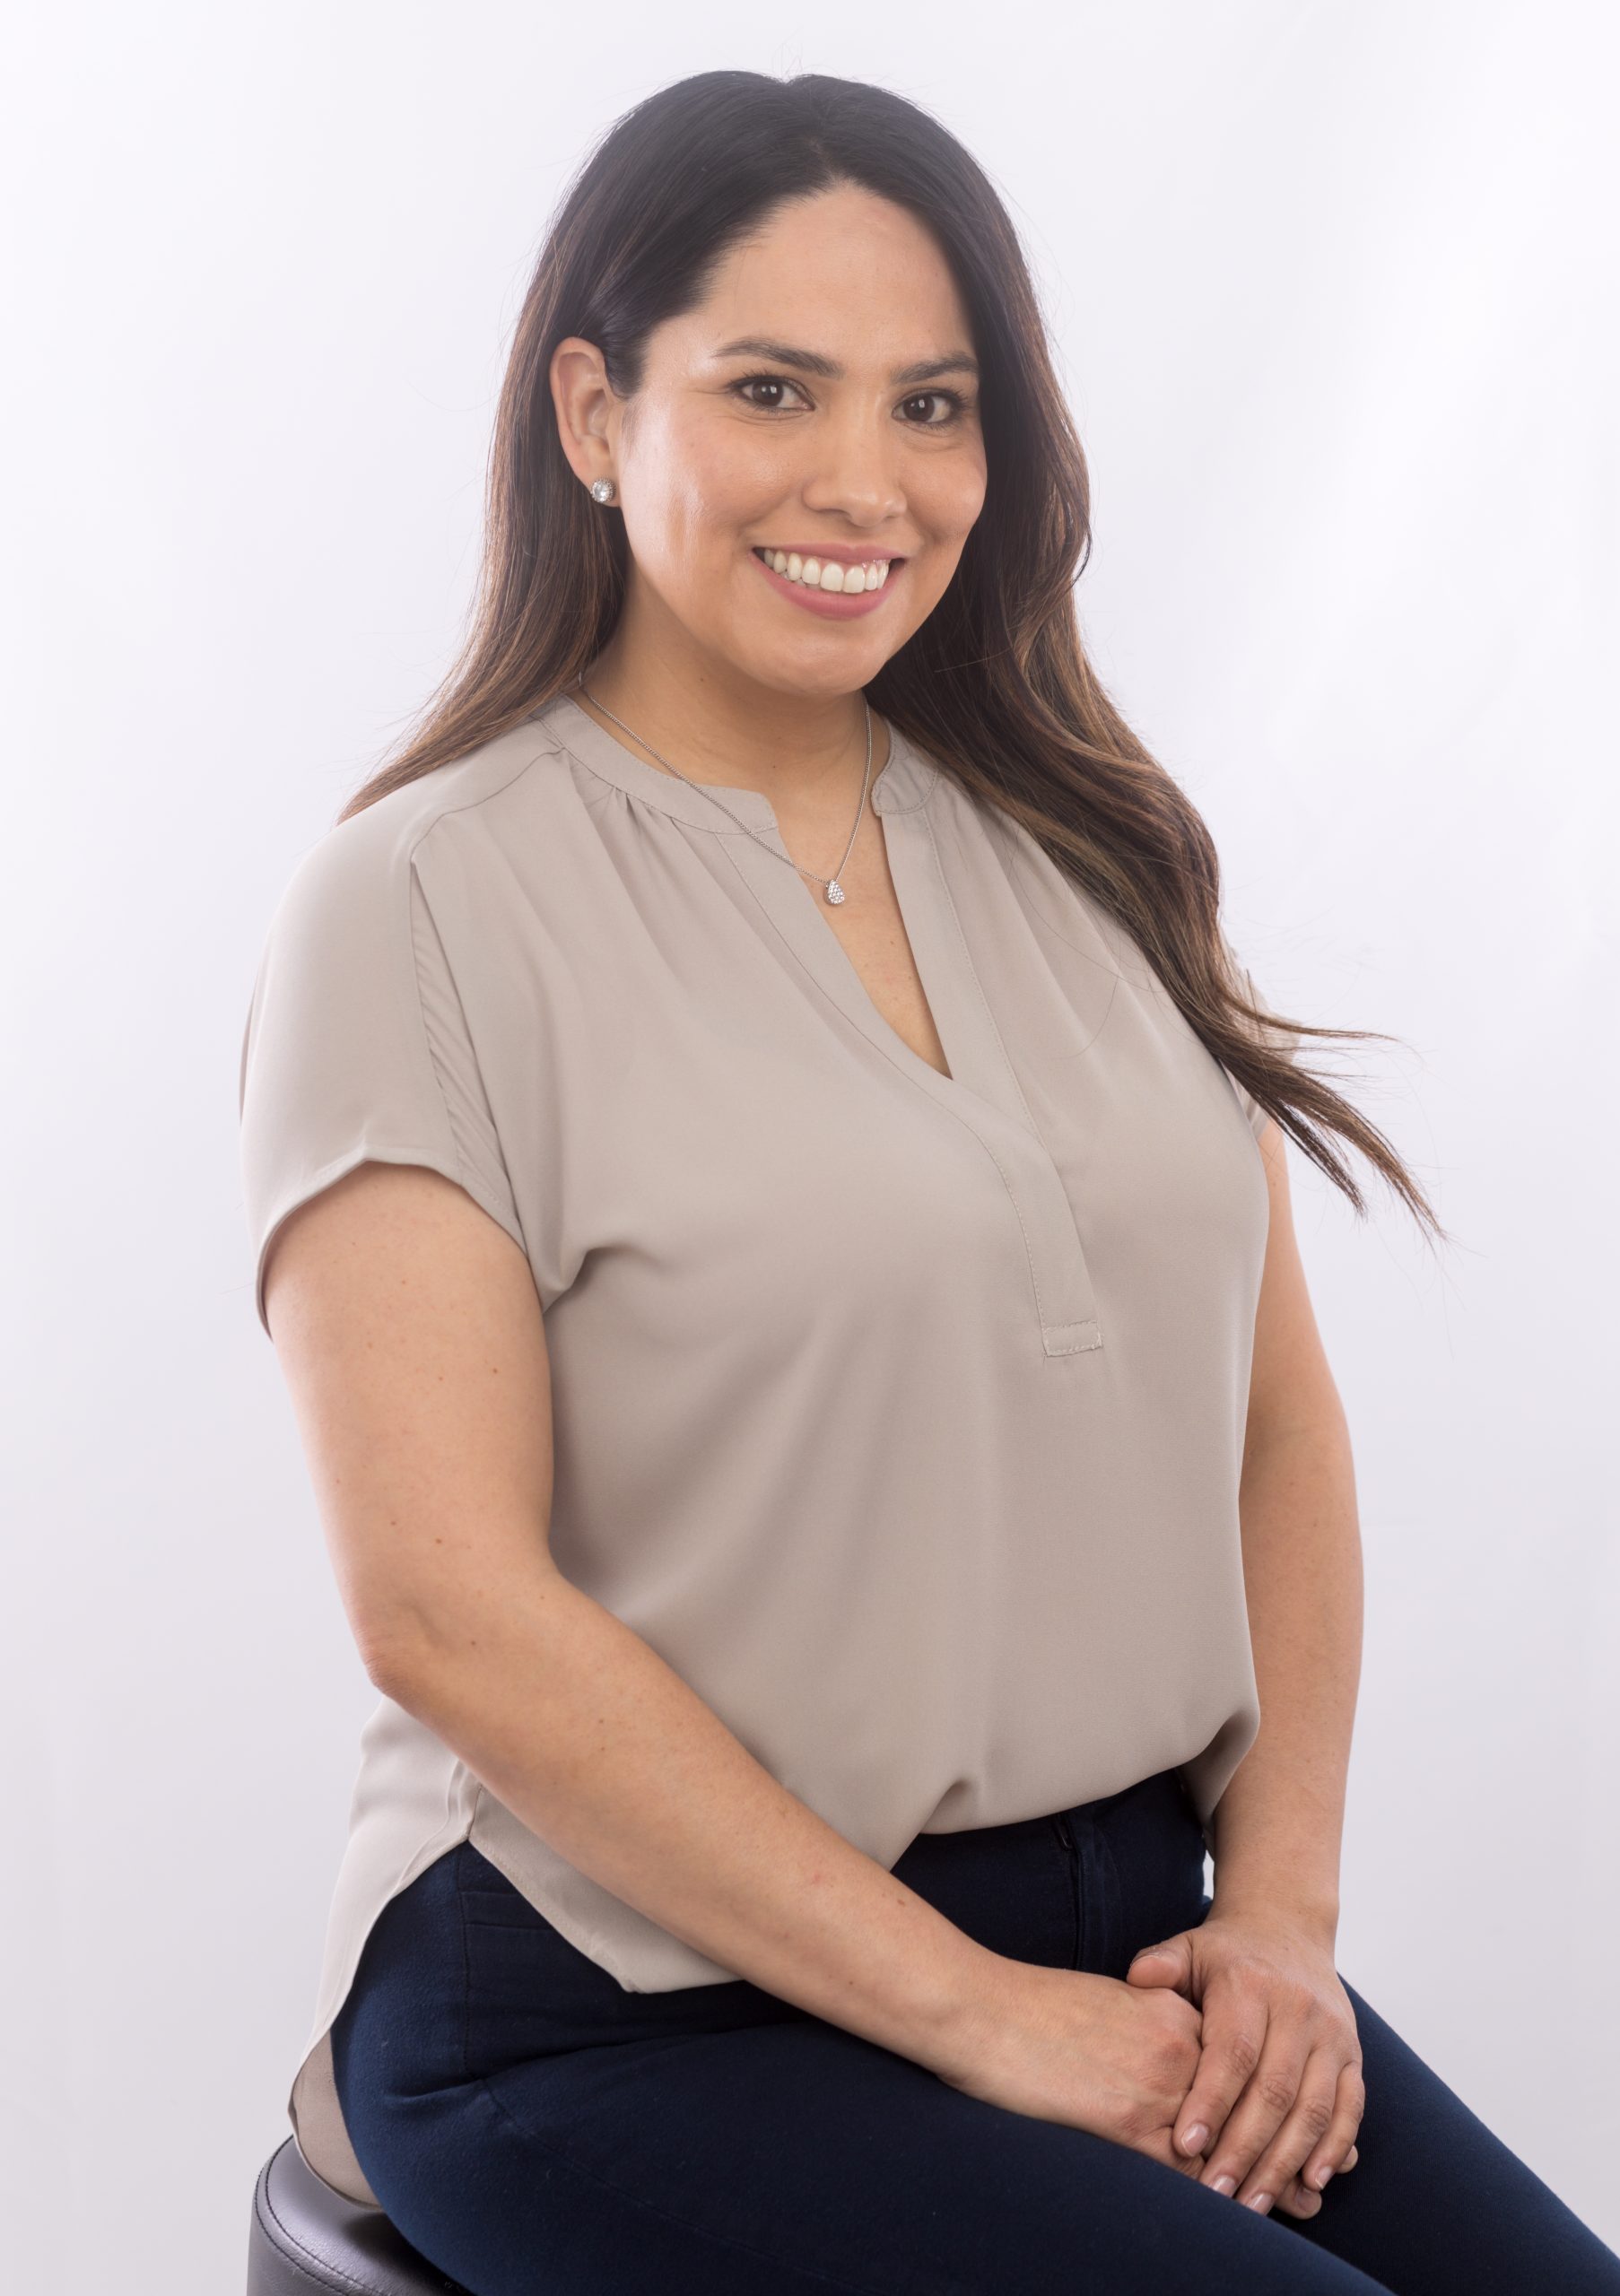 Stephanie Sanchez of La Luz Counseling